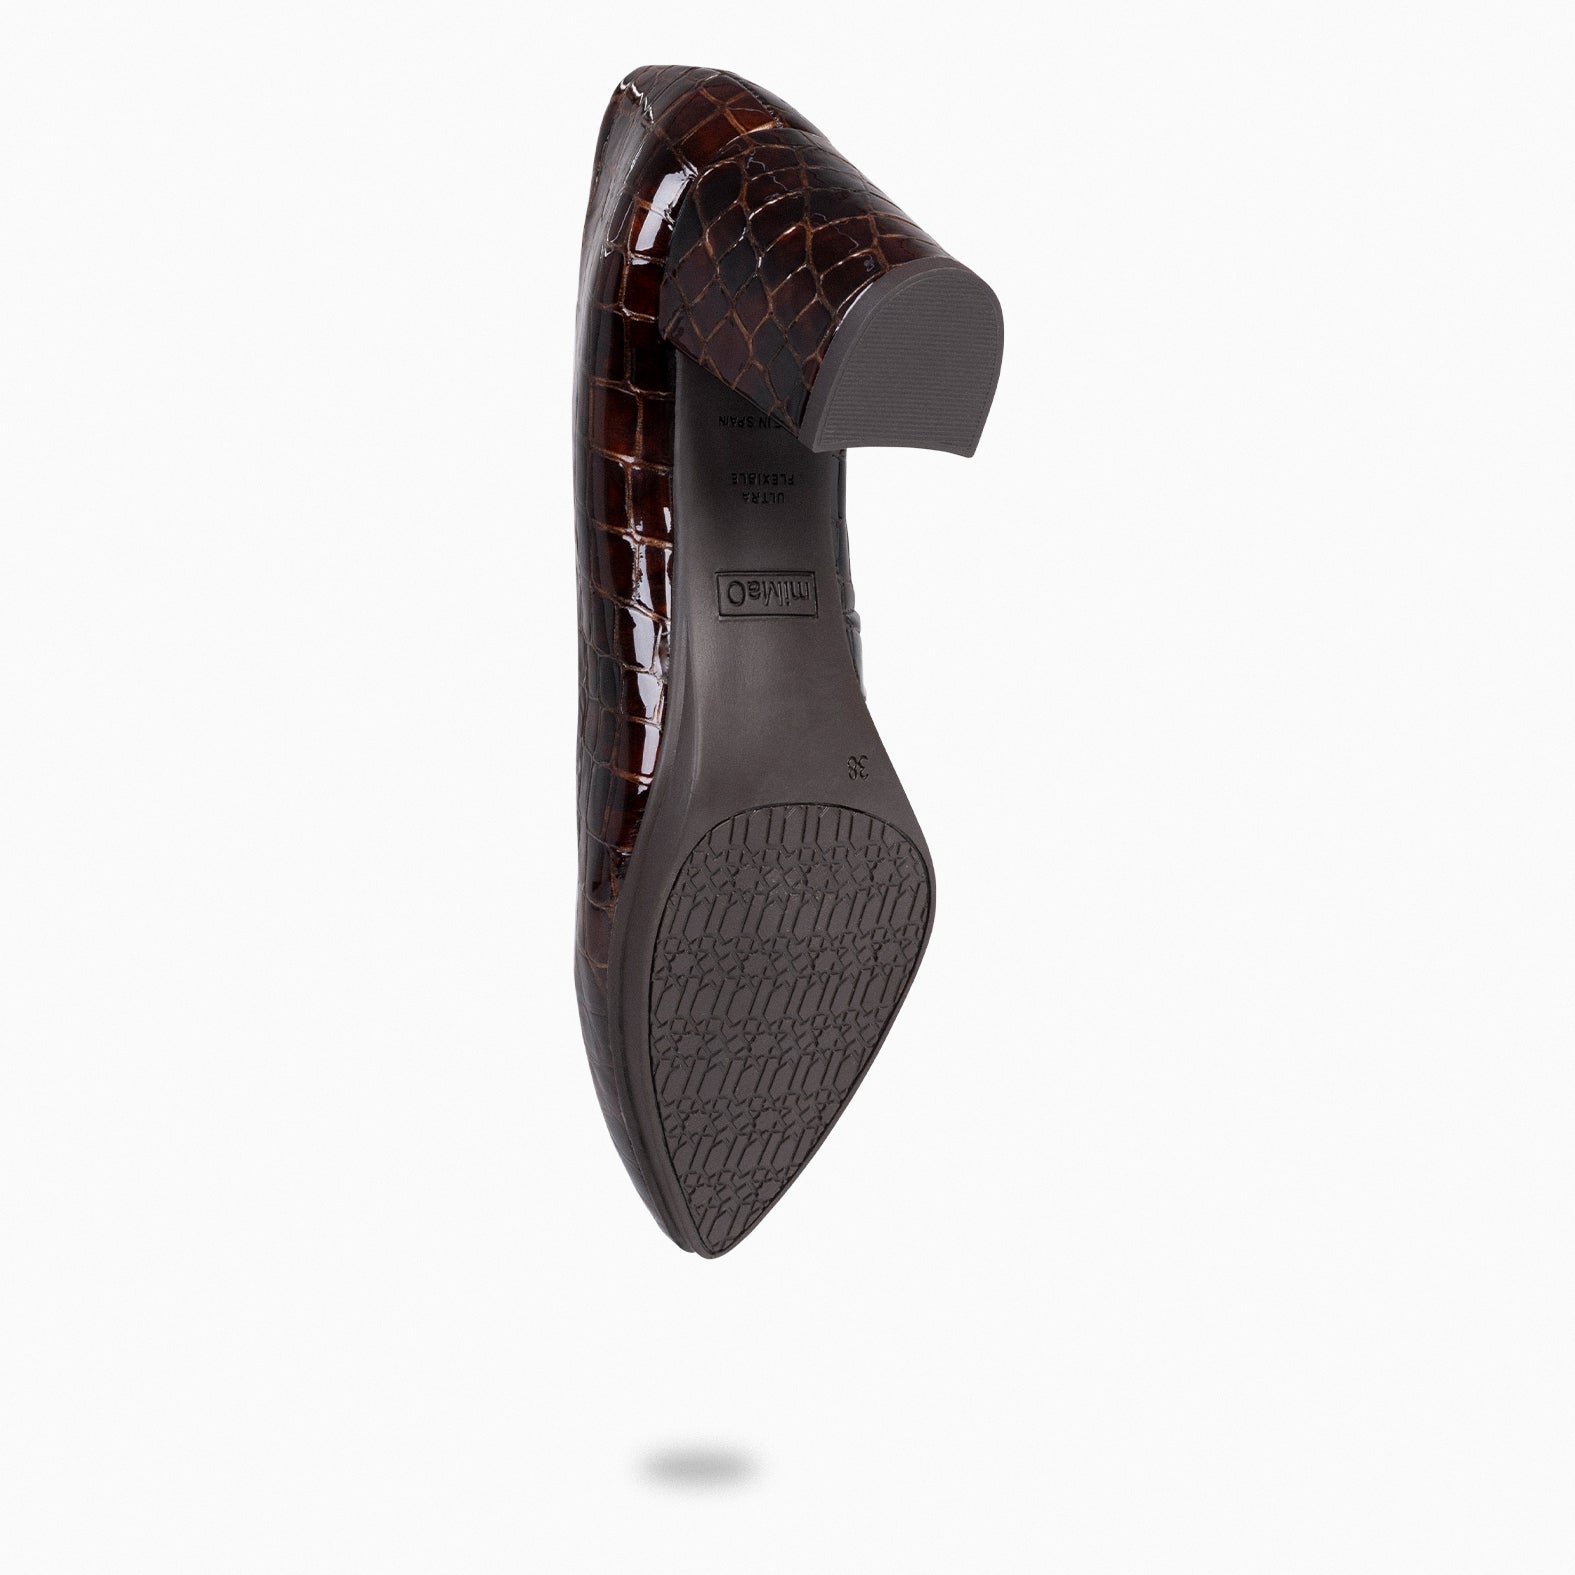 URBAN S COCO – BROWN coco texture mid heels